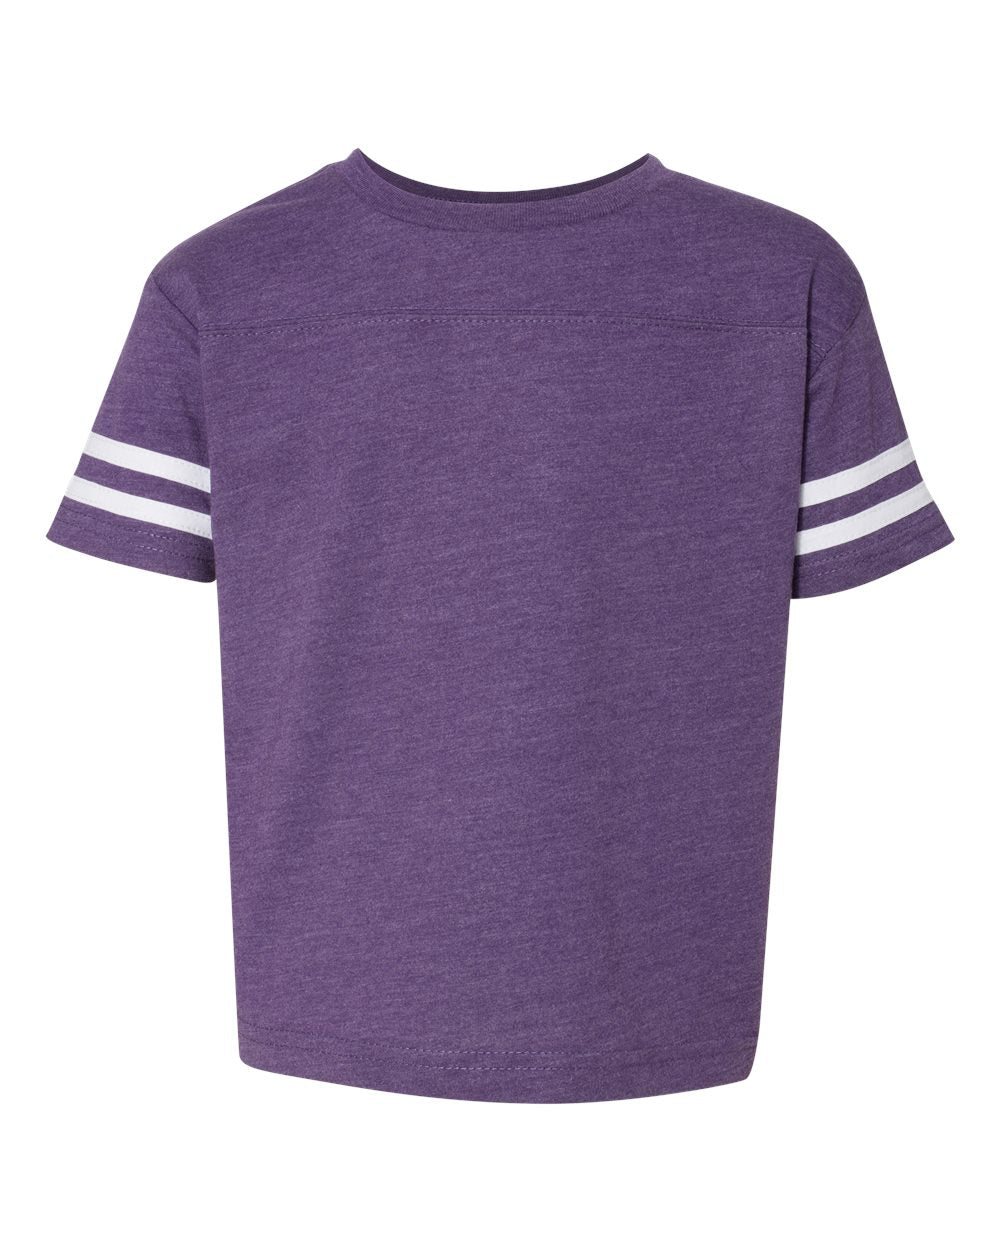 rabbit skins toddler football jersey tee vintage purple white